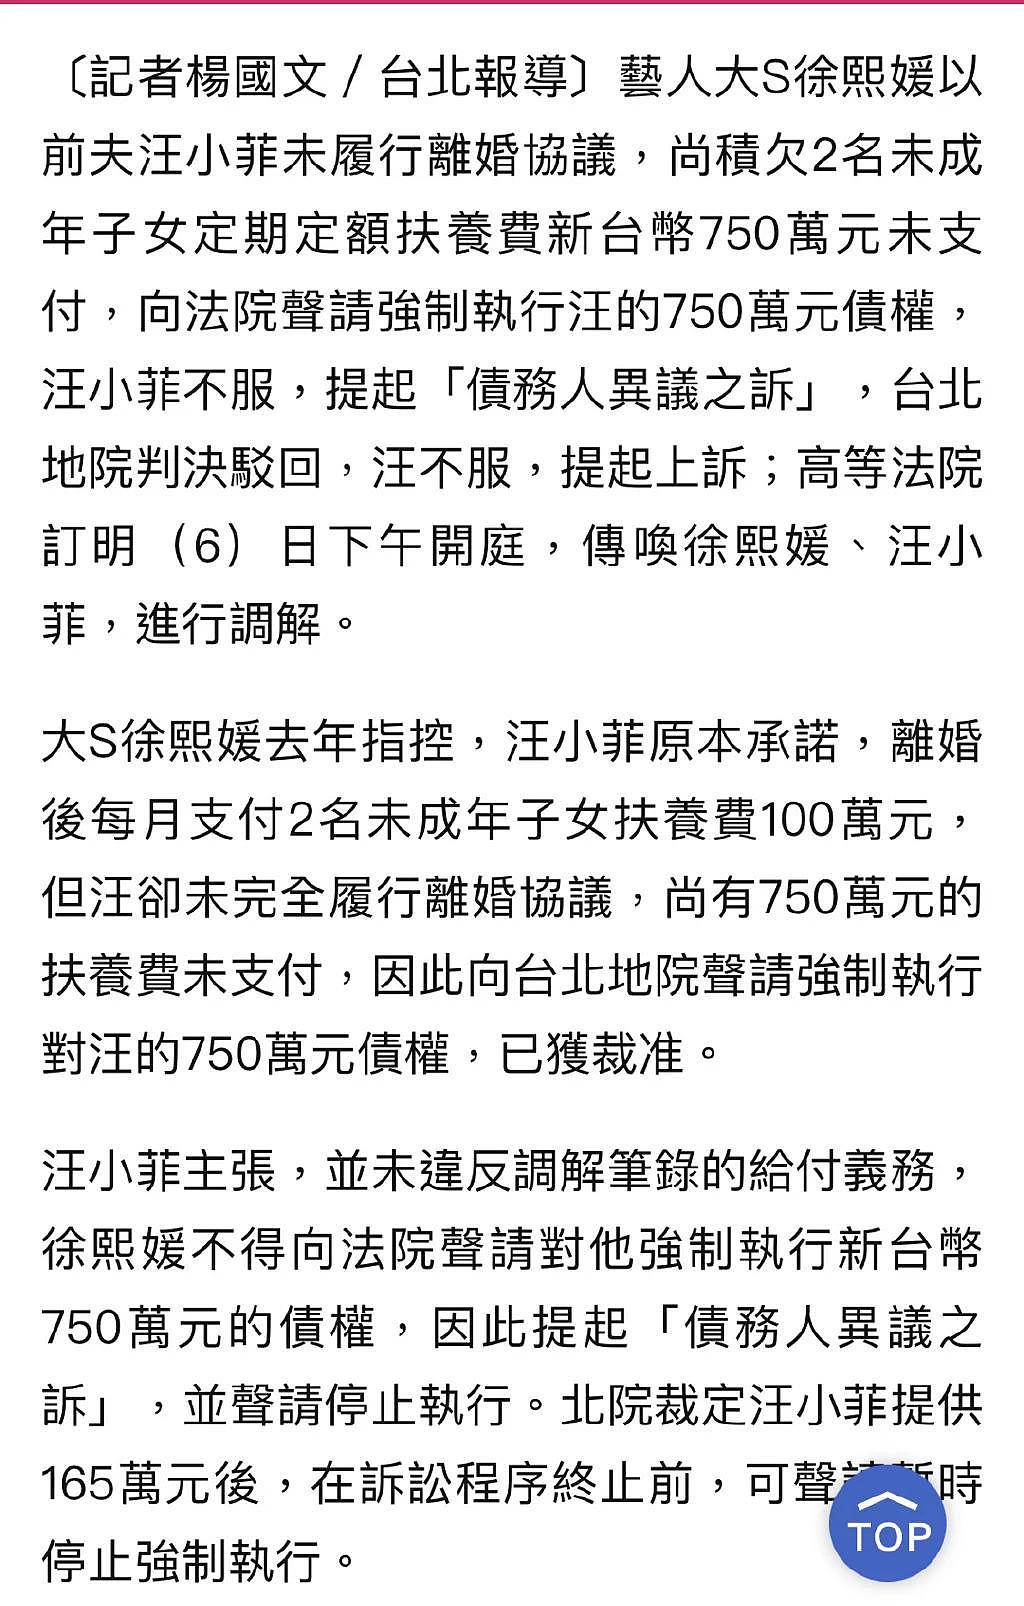 汪小菲不服大 s 胜诉判决诉至高等法院 6 日将再开庭 - 3